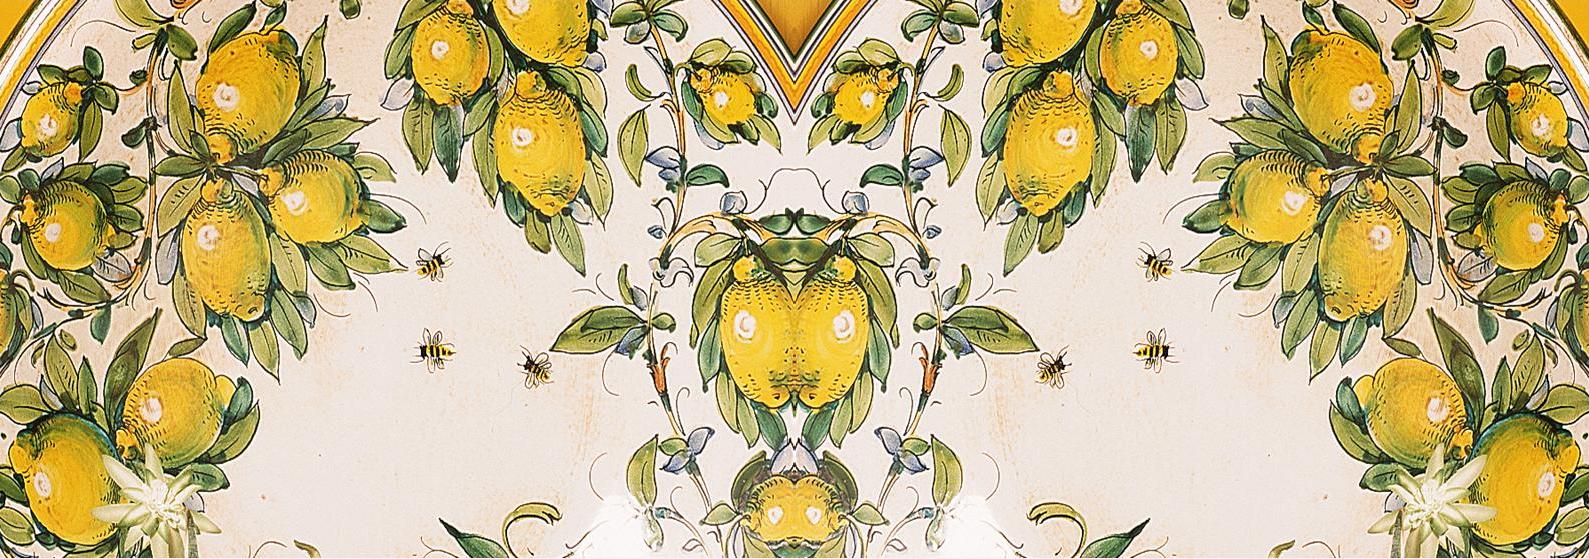 SUBLIMART: Toscana - Positano Lemons  & Tuscan Bees Art Mug - Artistica.com